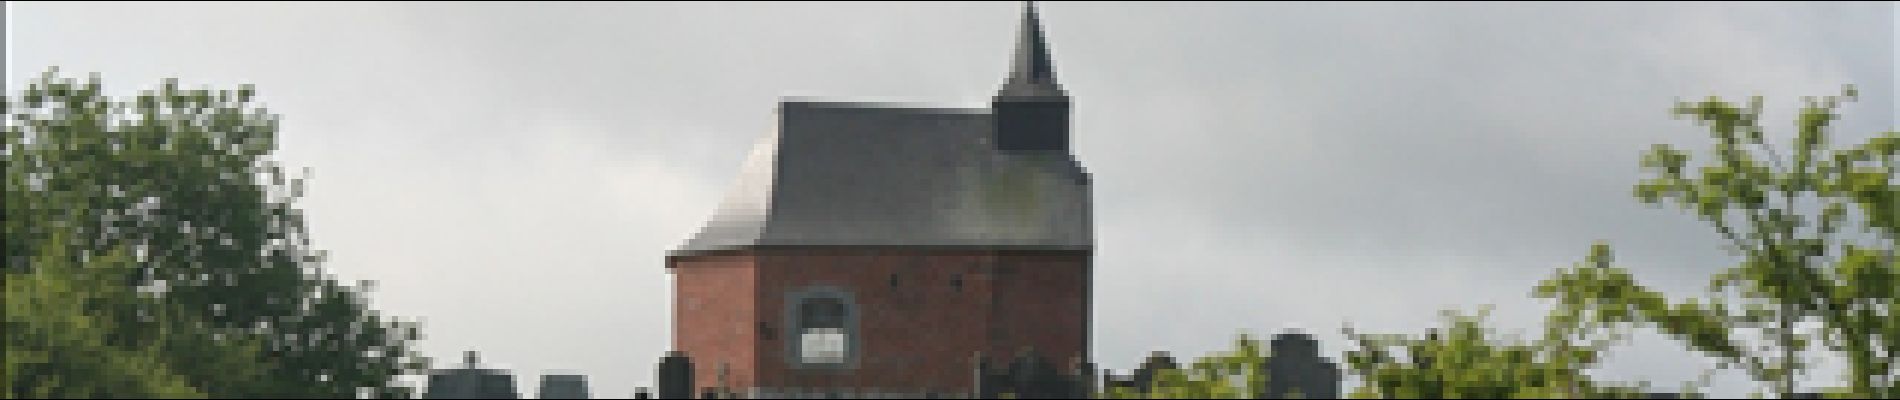 Point d'intérêt Houyet - Chapelle Notre-Dame de Grâce - Photo